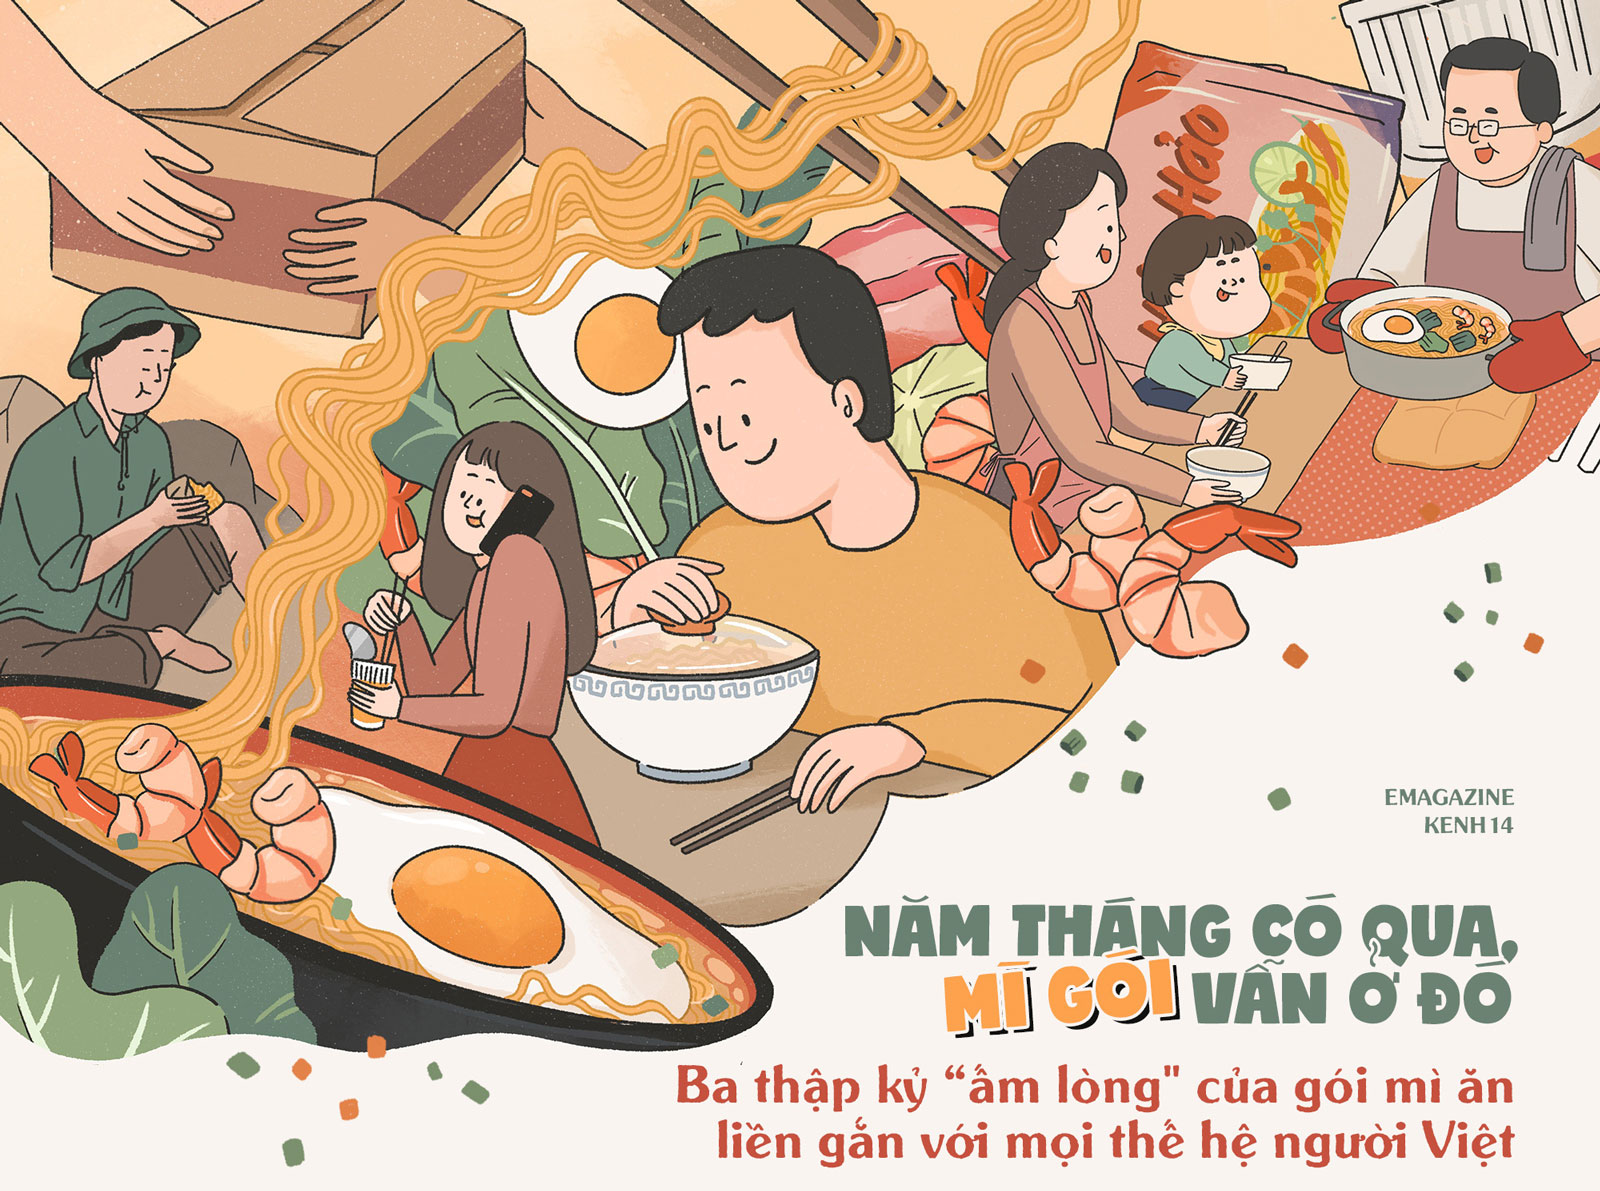 Món Ăn Huyền Thoại - Bạn có biết danh sách các món Ăn Huyền Thoại của Việt Nam đã được công nhận bởi UNESCO? Hãy đến xem hình ảnh và tìm hiểu về những món ăn đặc trưng và được yêu thích tại Việt Nam này.